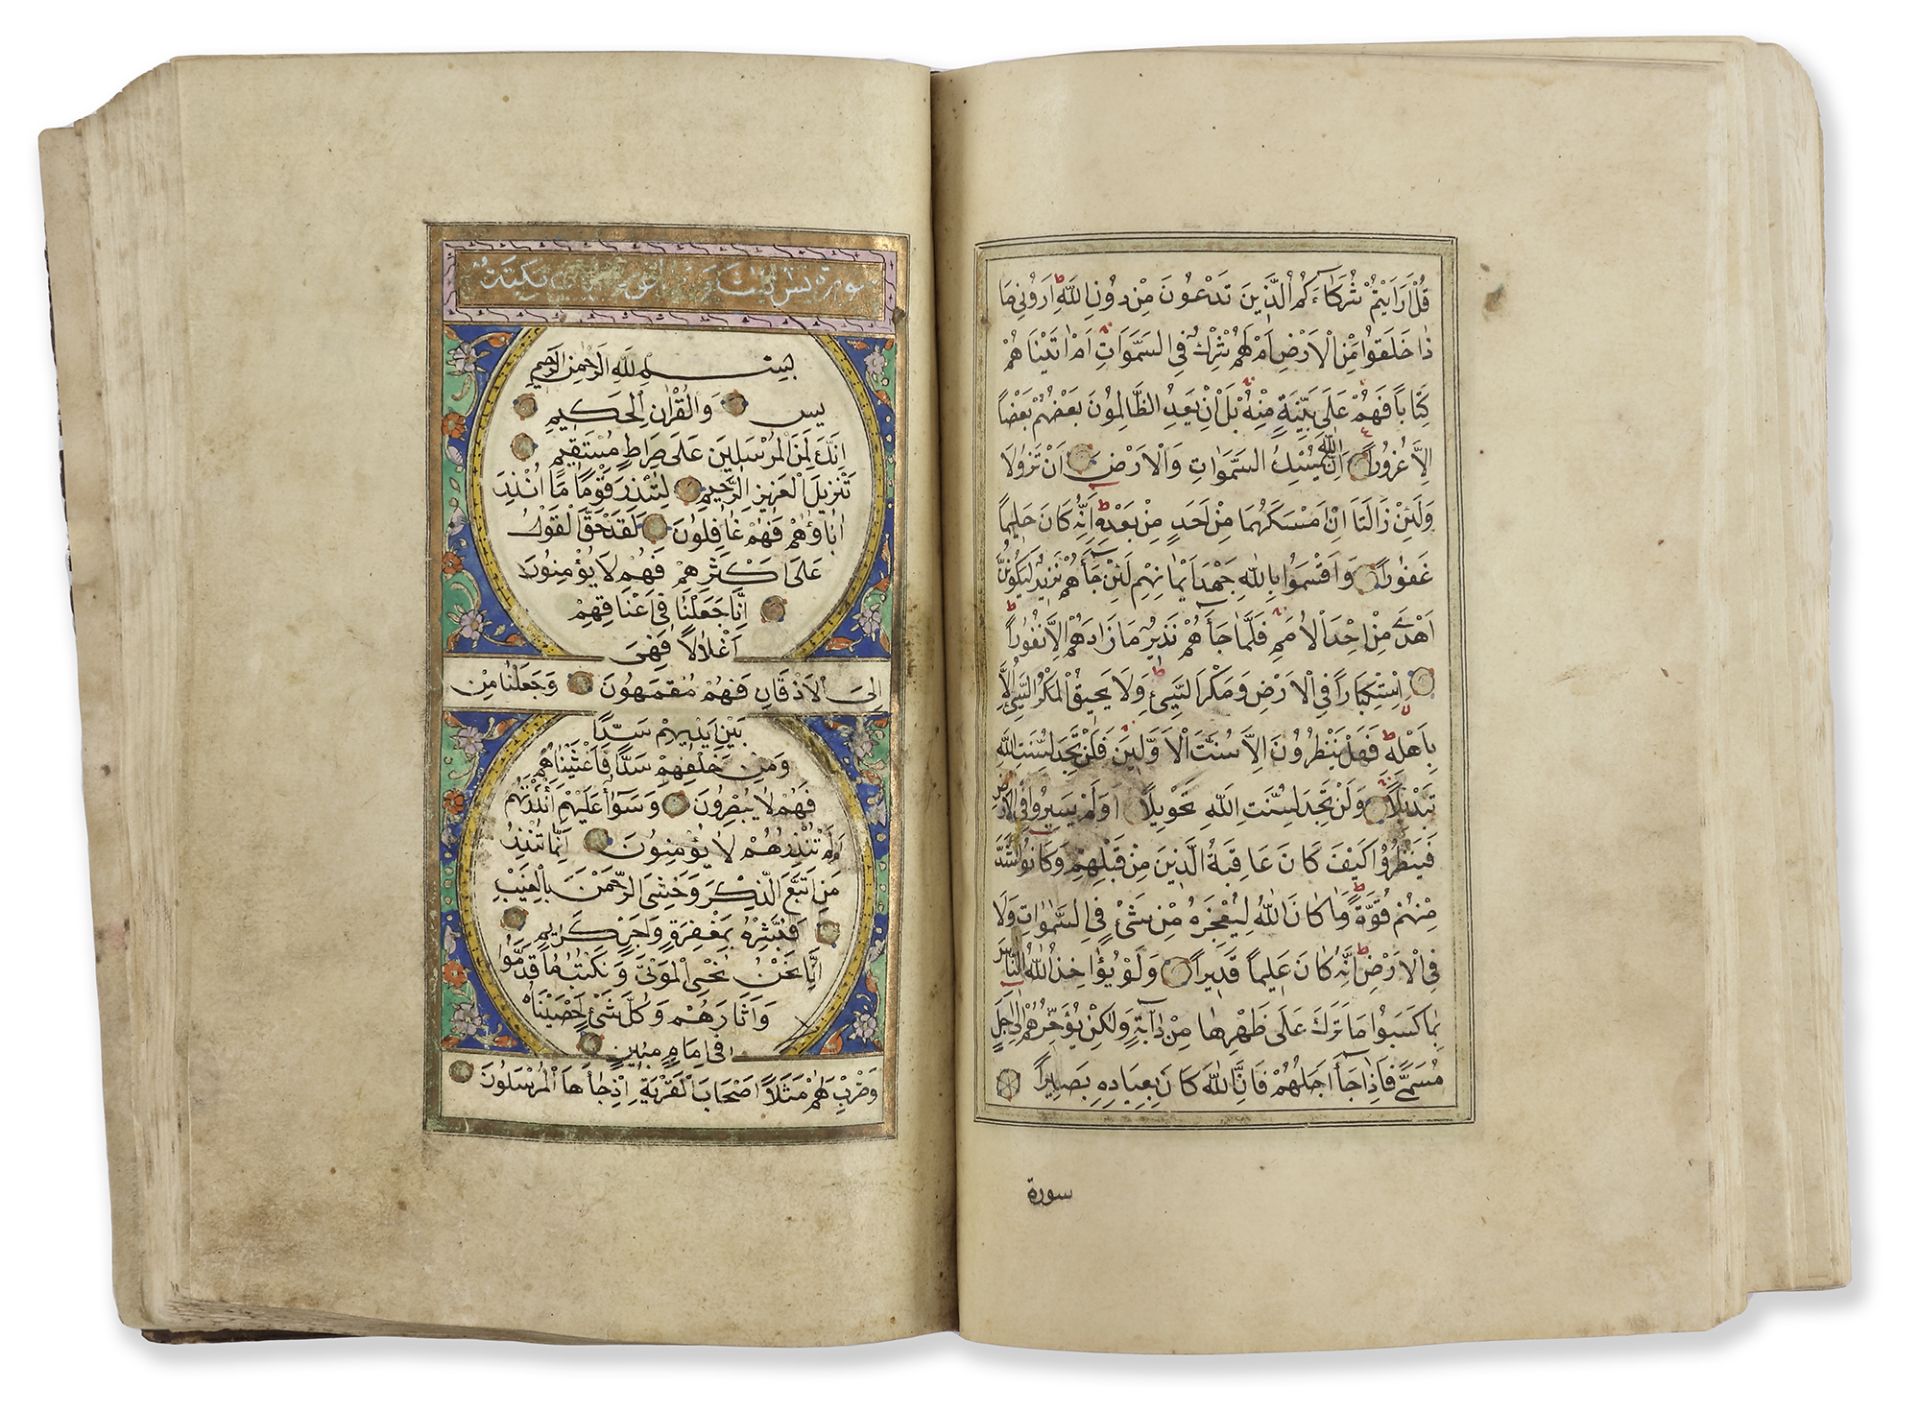 AN ILLUMINATED OTTOMAN QURAN BY MUSTAFA HILMI HACI IBRAHIM EL-ERZINCANI, OTTOMAN TURKEY, DATED 1264 - Bild 3 aus 7